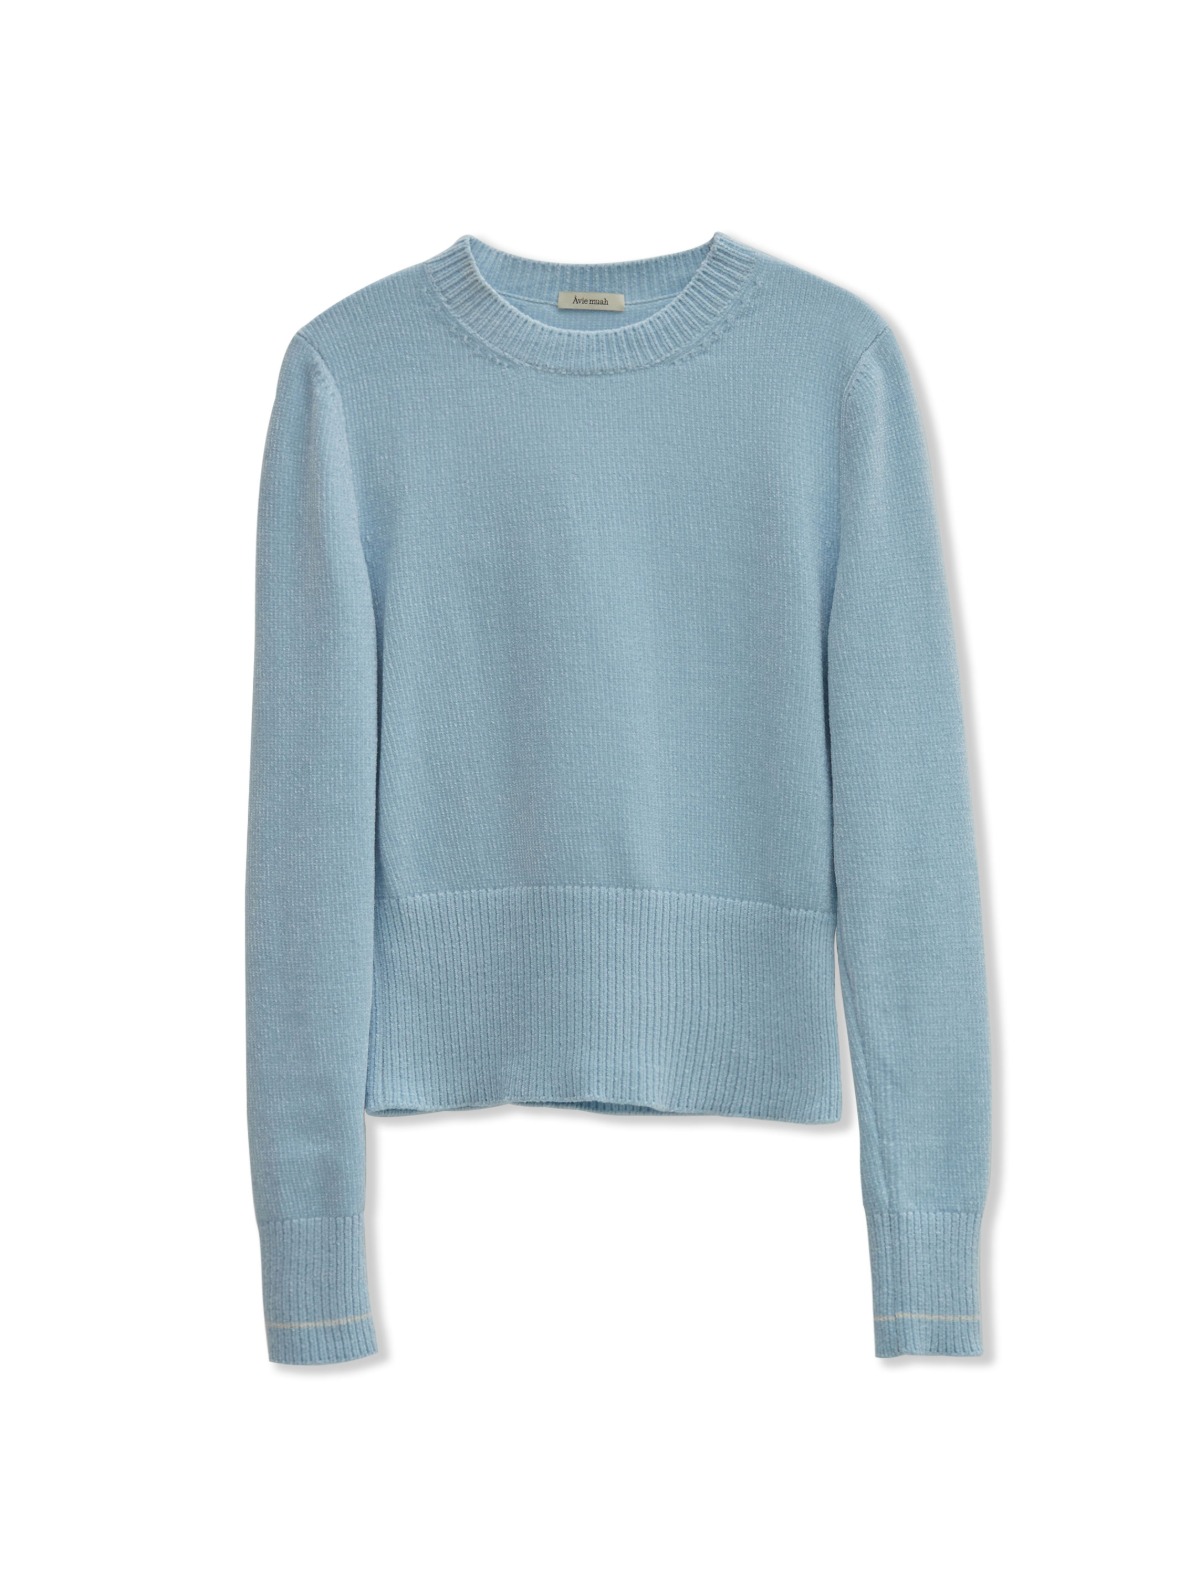 Velvet Yarn Knit Sweater (Blue)